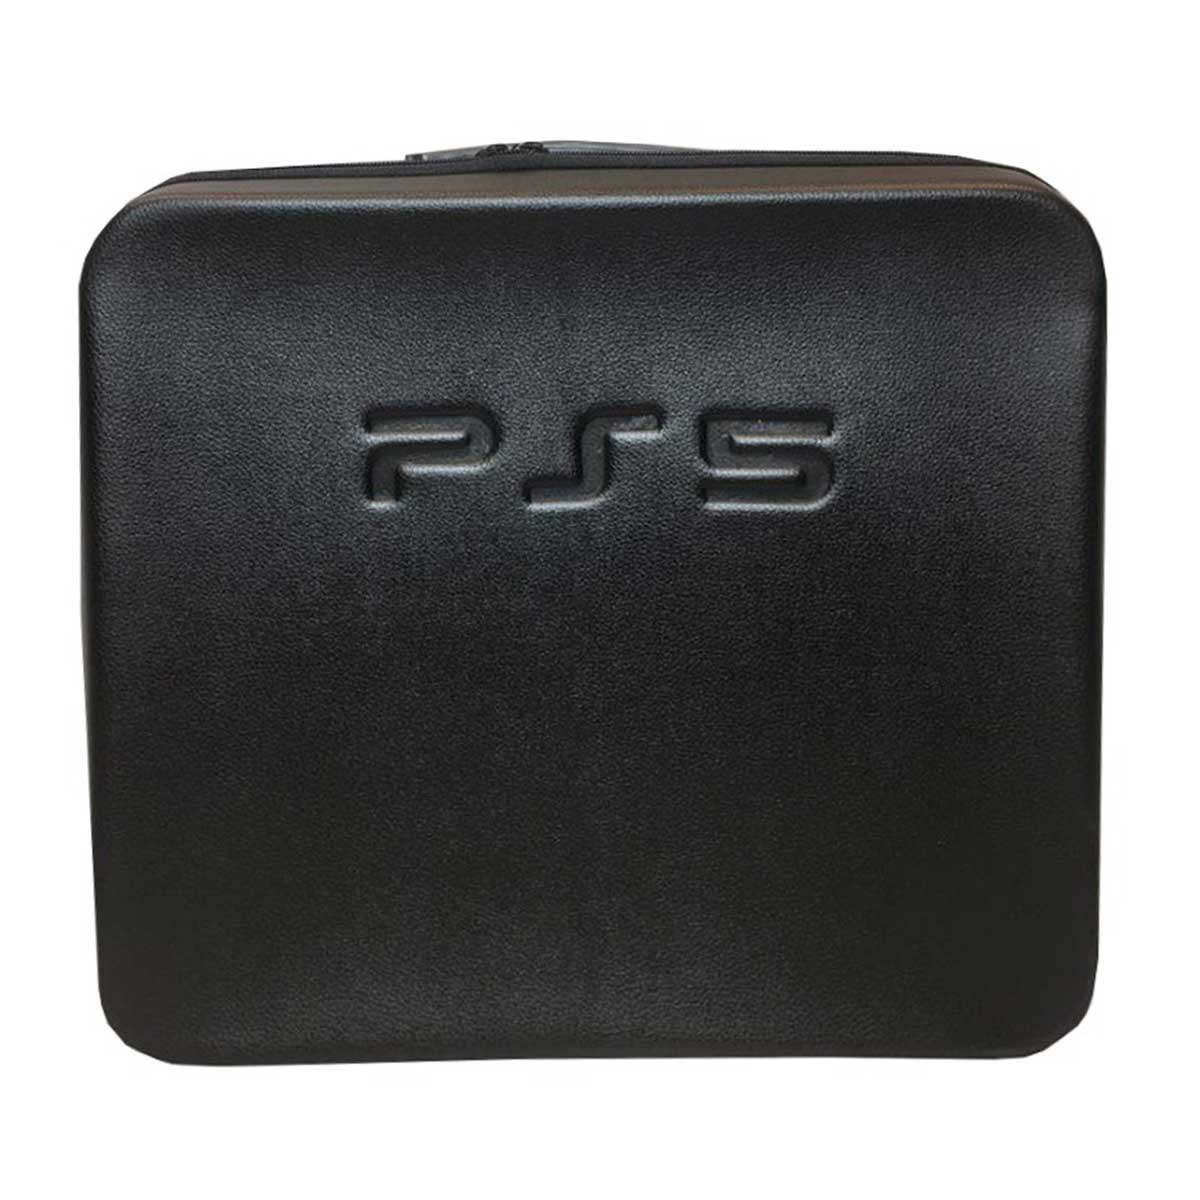 خرید کیف حمل پلی استیشن 5 طرح PS5 مشکی